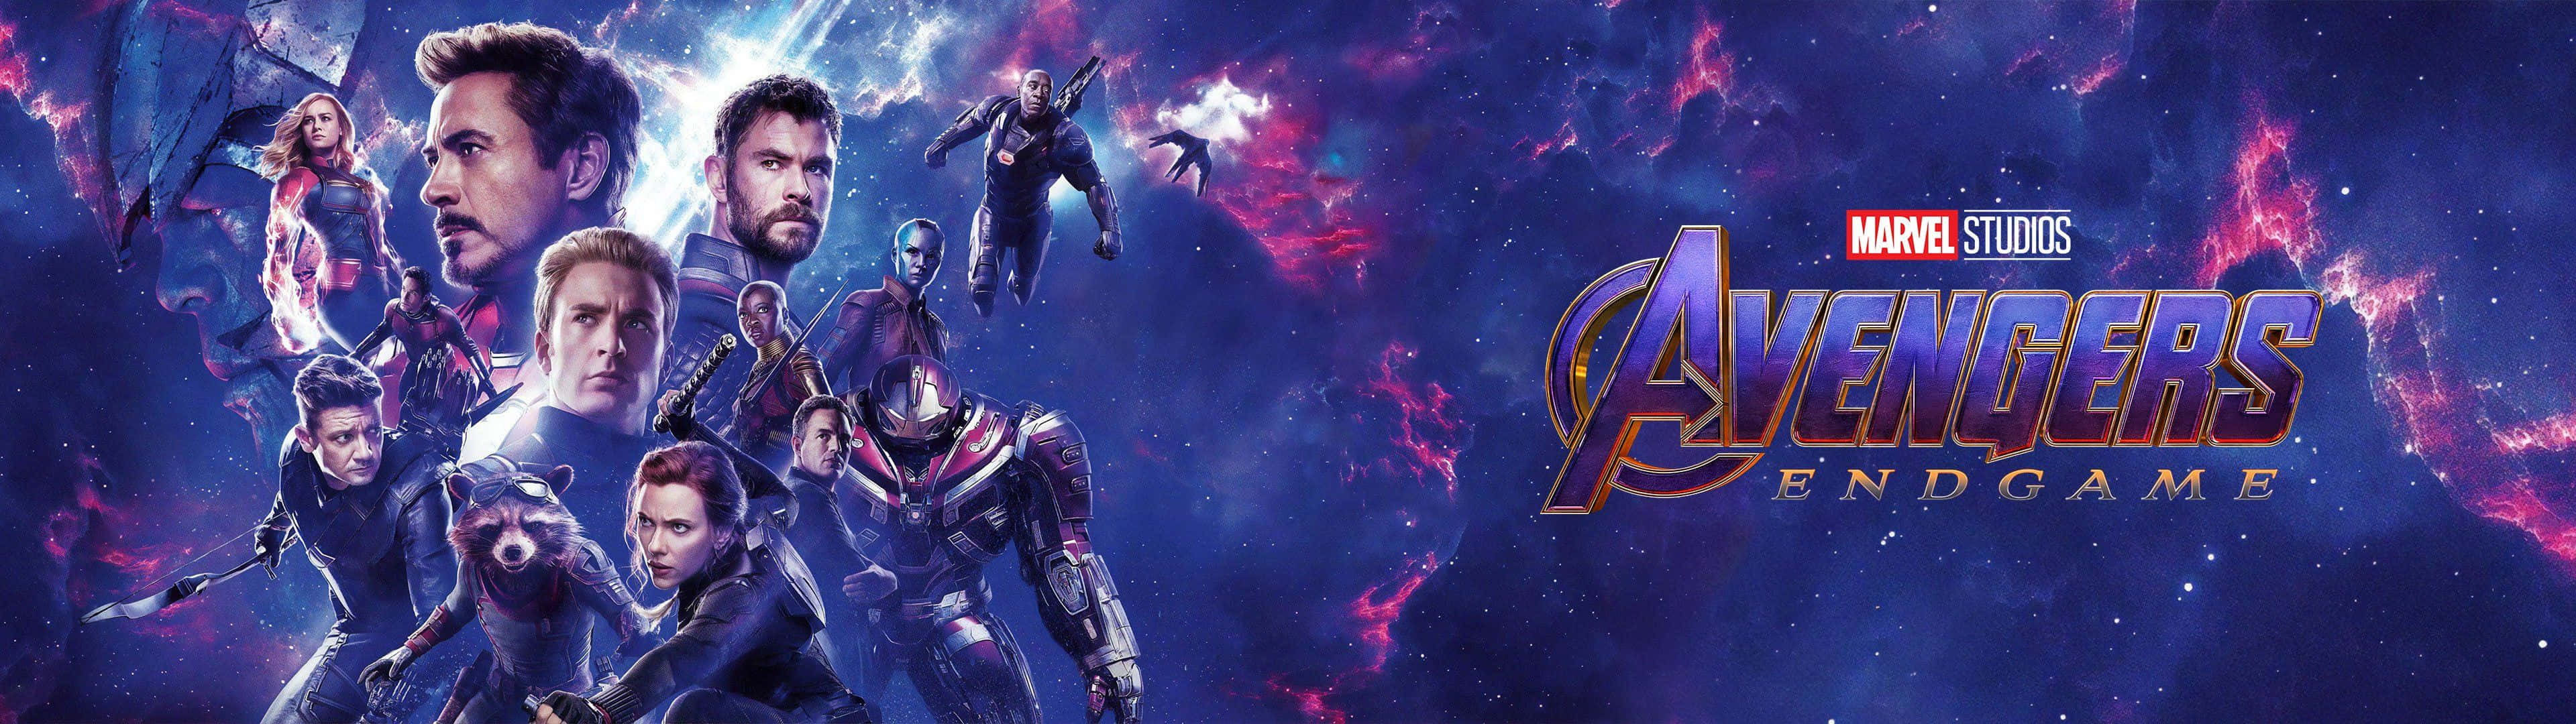 Spüredie Kraft Der Marvel Avengers Auf Einem Dual Screen Wallpaper